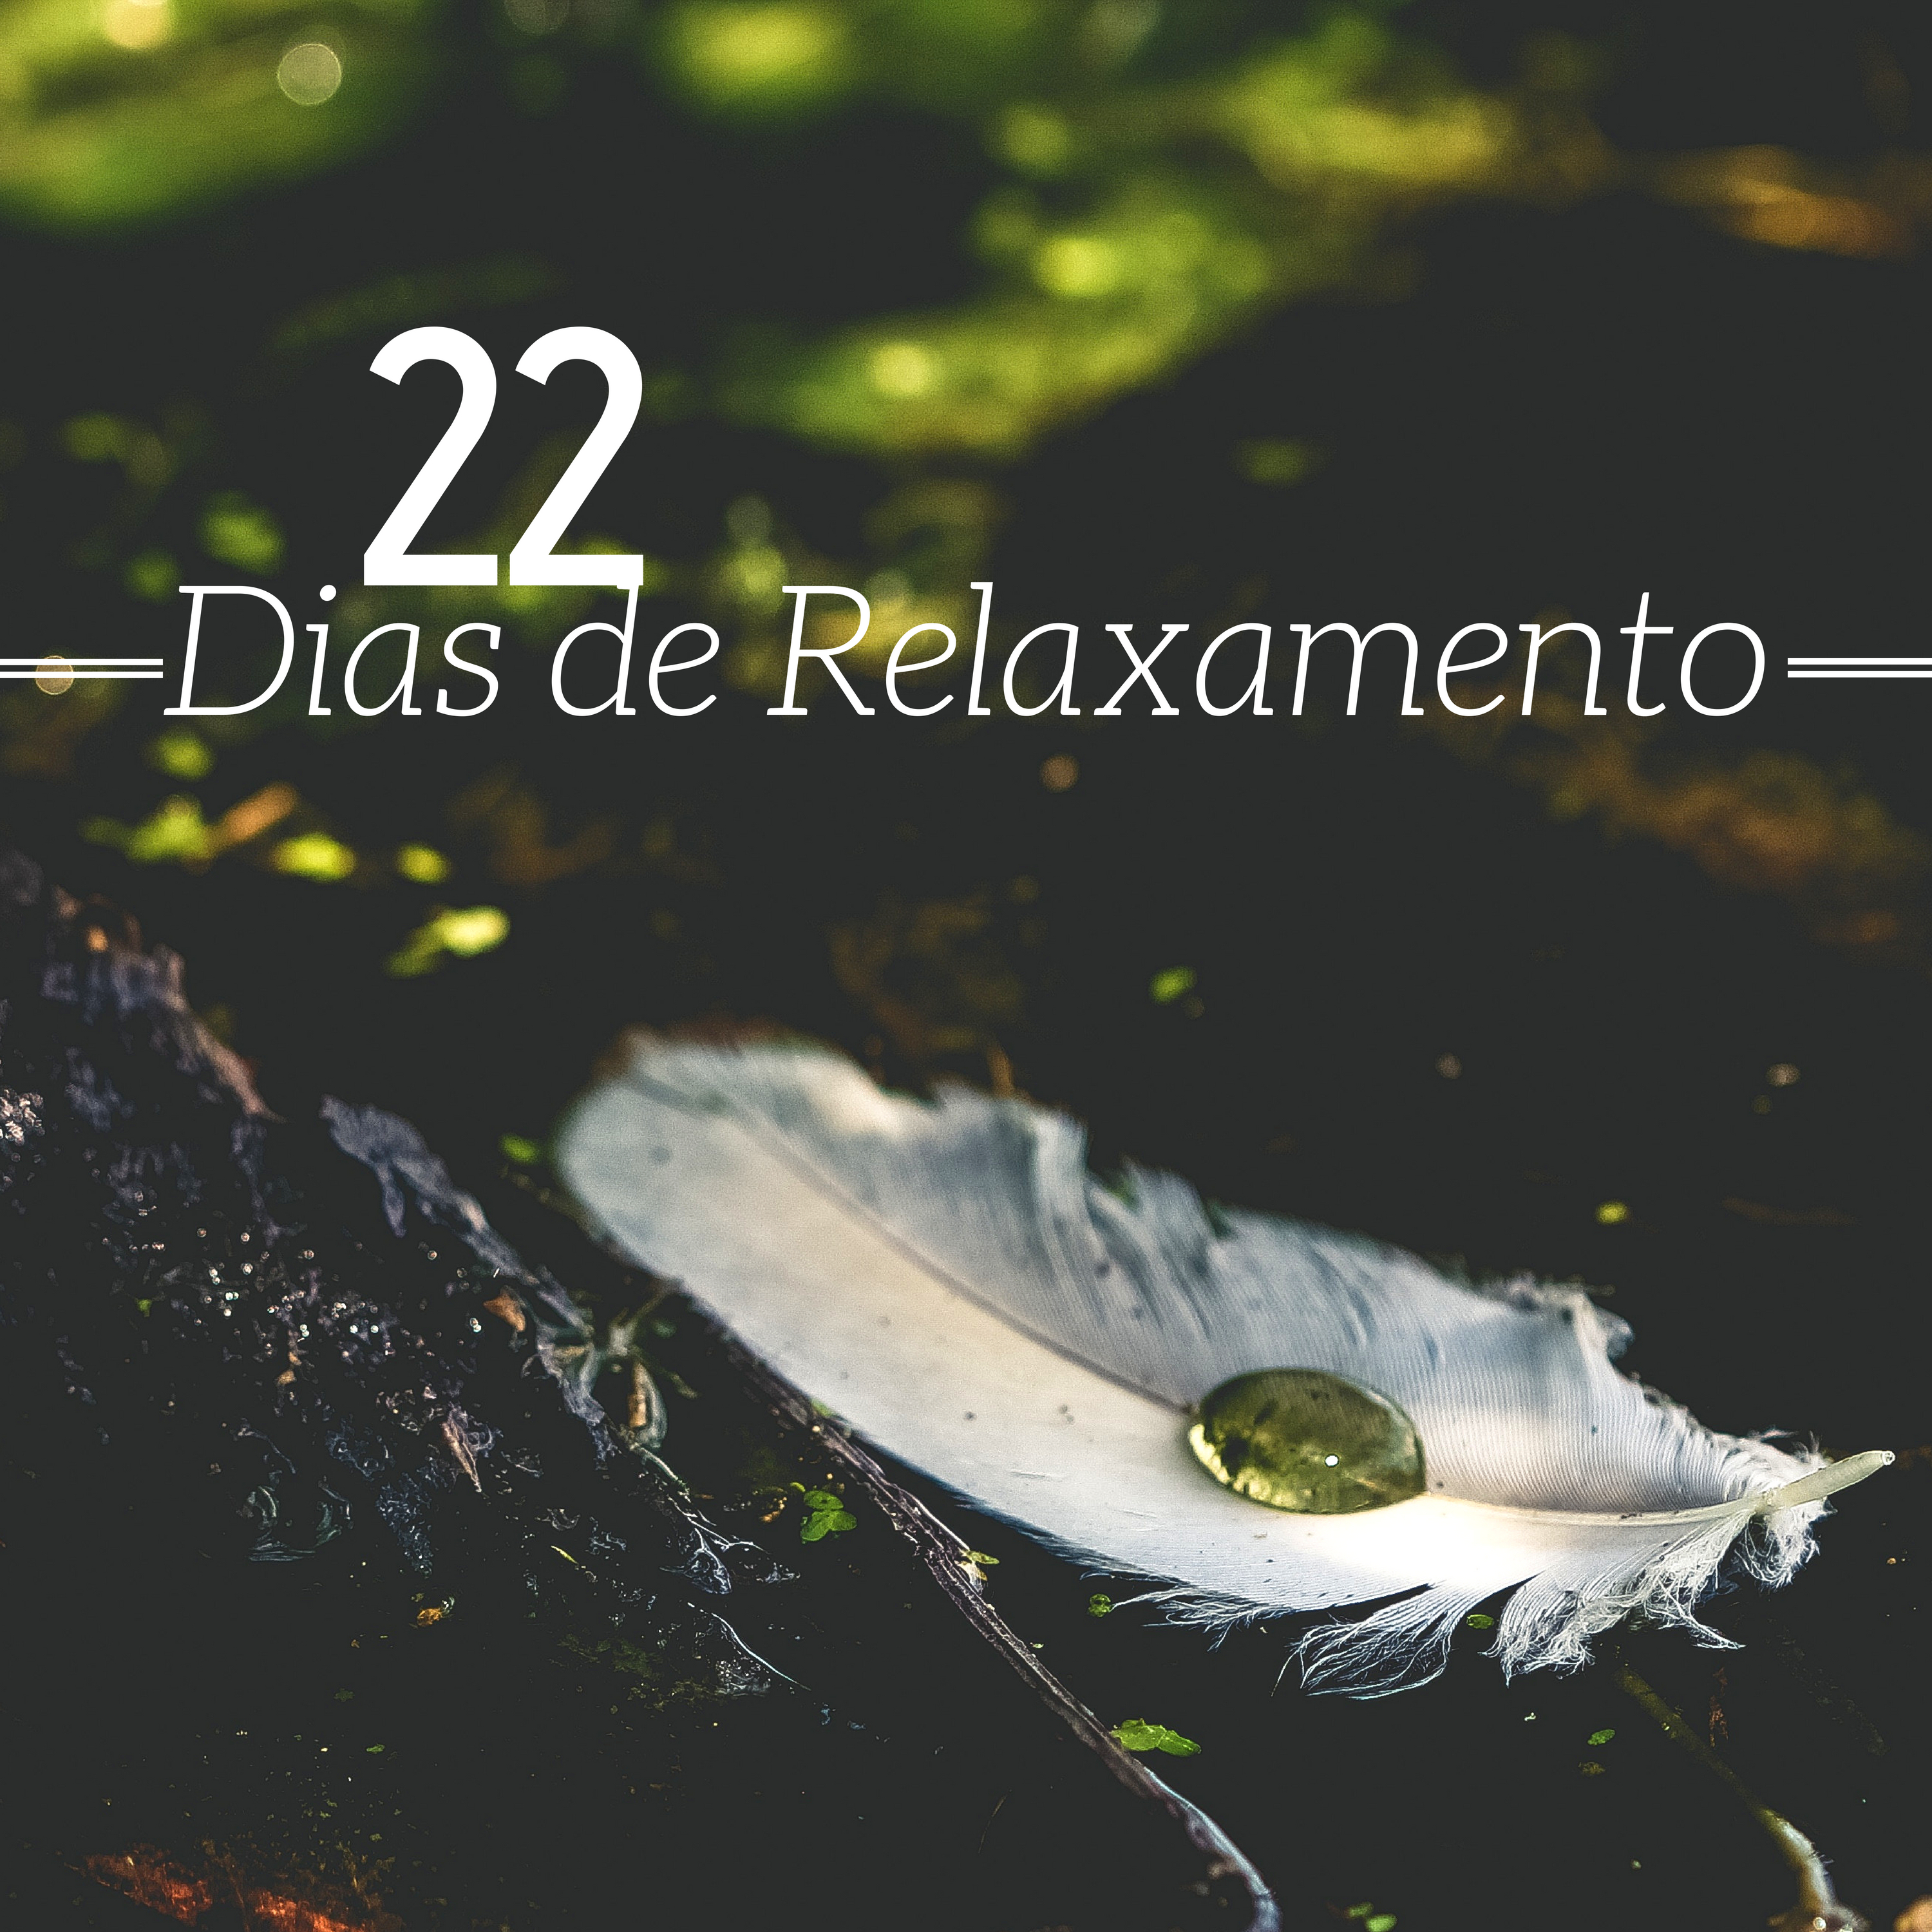 22 Dias de Relaxamento